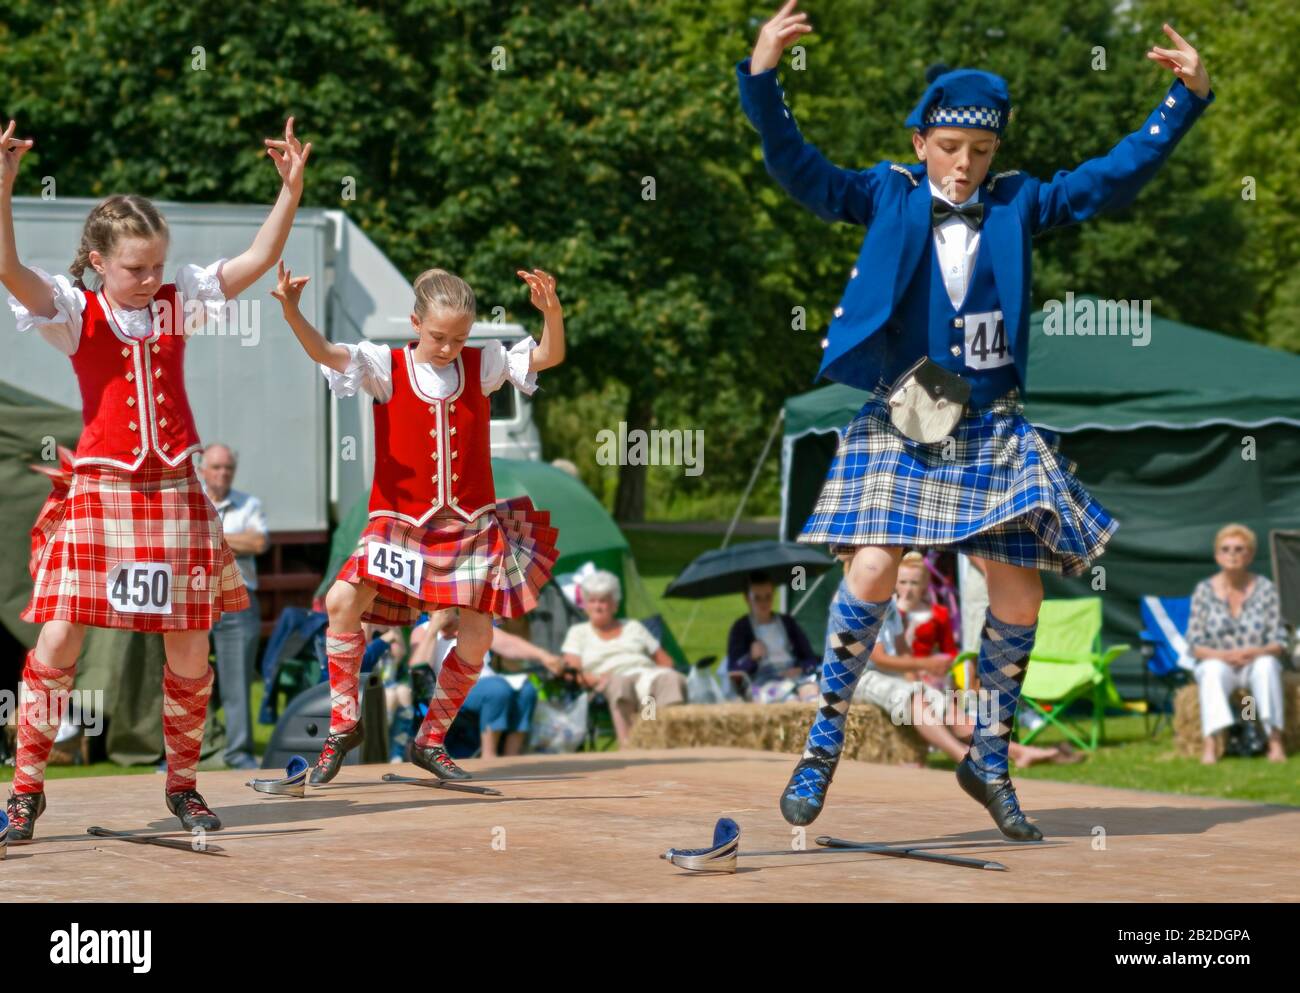 Giovane Scottish Highland Dancer che esegue una danza di spada durante un concorso a Colchester, Essex, Inghilterra Foto Stock